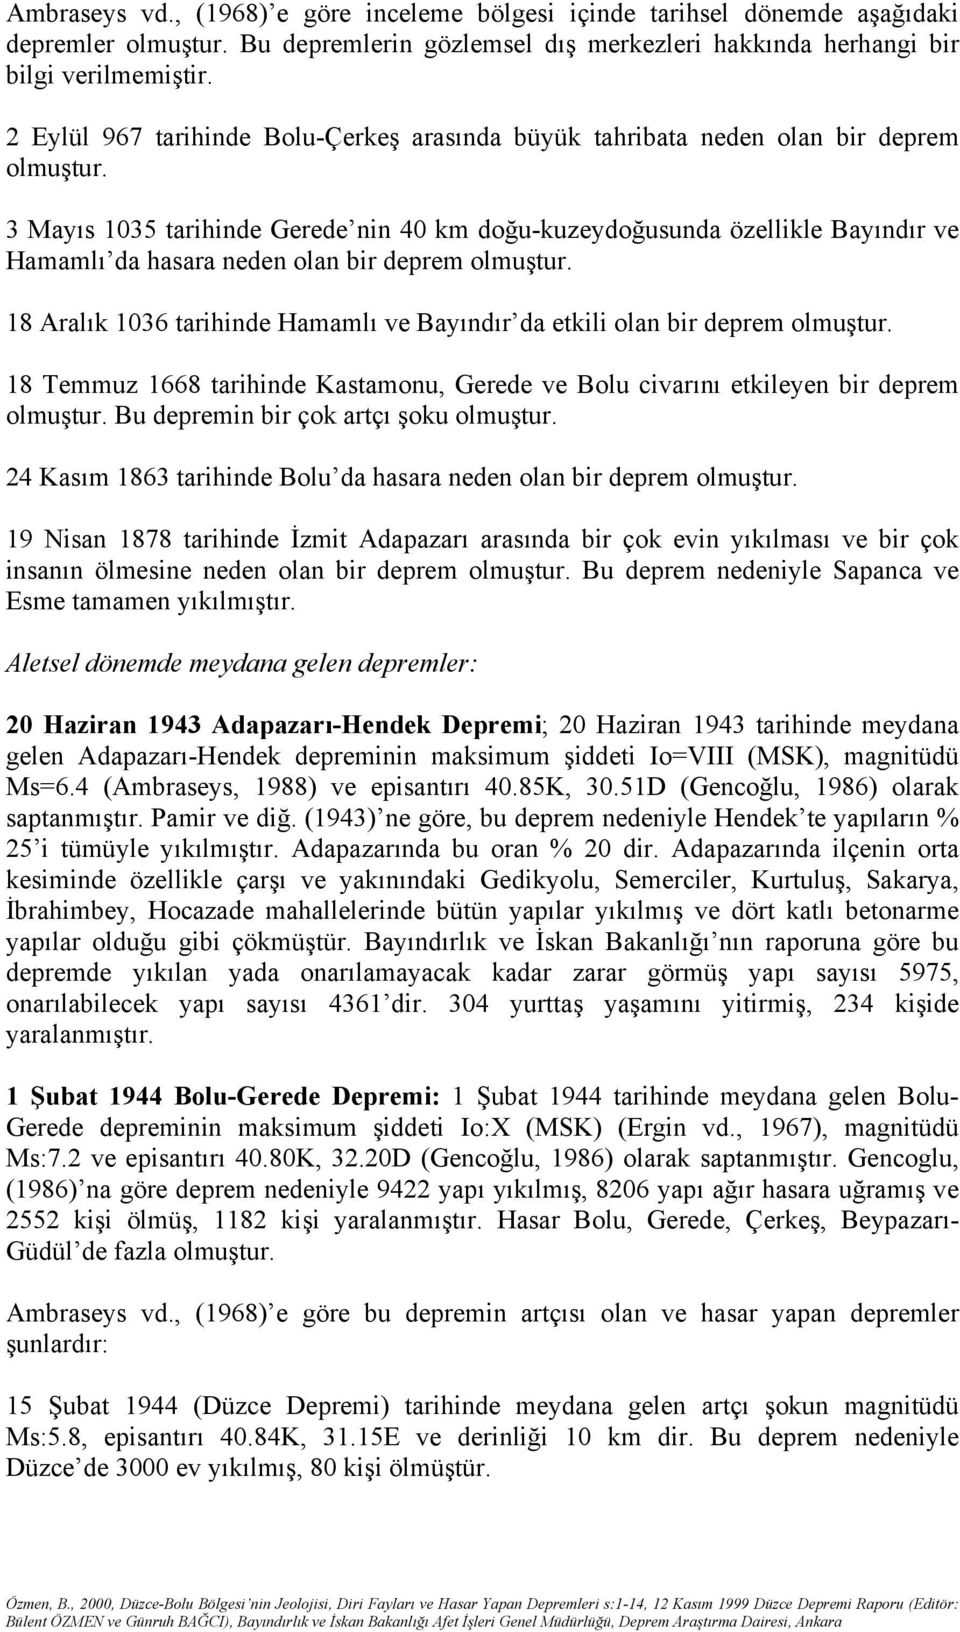 3 Mayıs 1035 tarihinde Gerede nin 40 km doğu-kuzeydoğusunda özellikle Bayındır ve Hamamlı da hasara neden olan bir deprem olmuştur.